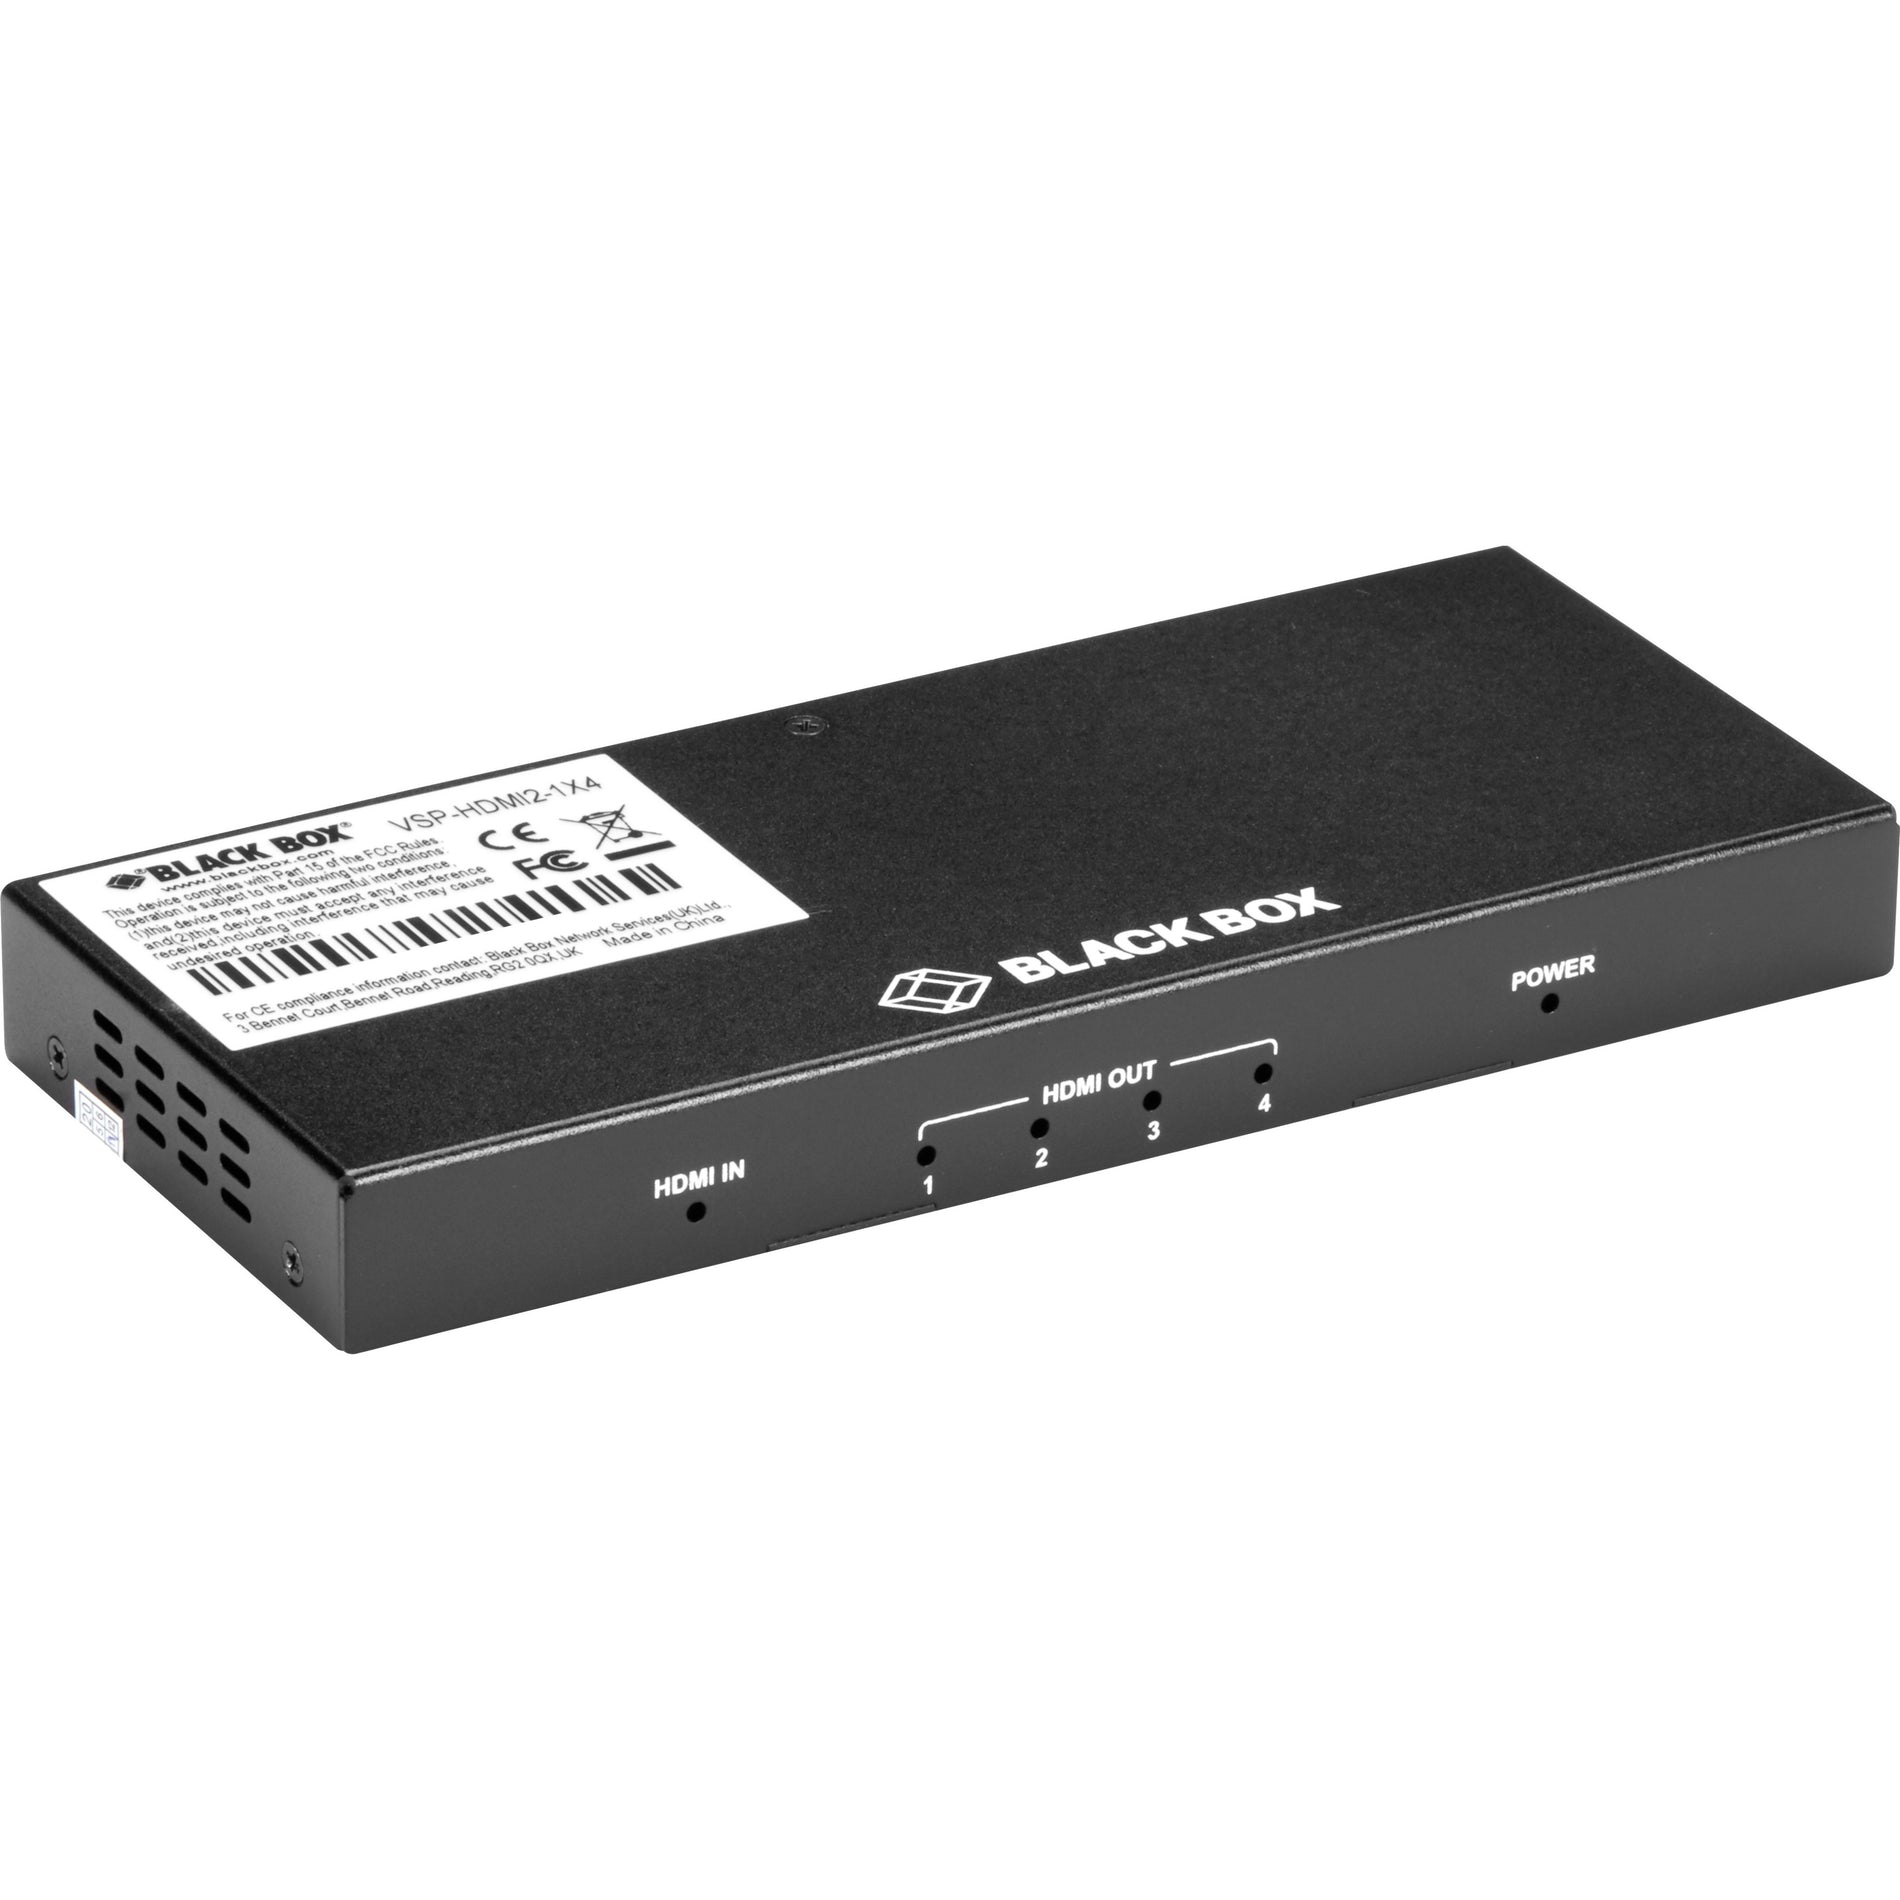 Black Box VSP-HDMI2-1X4 HDMI 2.0 4K60 Splitter - 1x4, Maximum Video Resolution 4096 x 2160, 3 Year Warranty